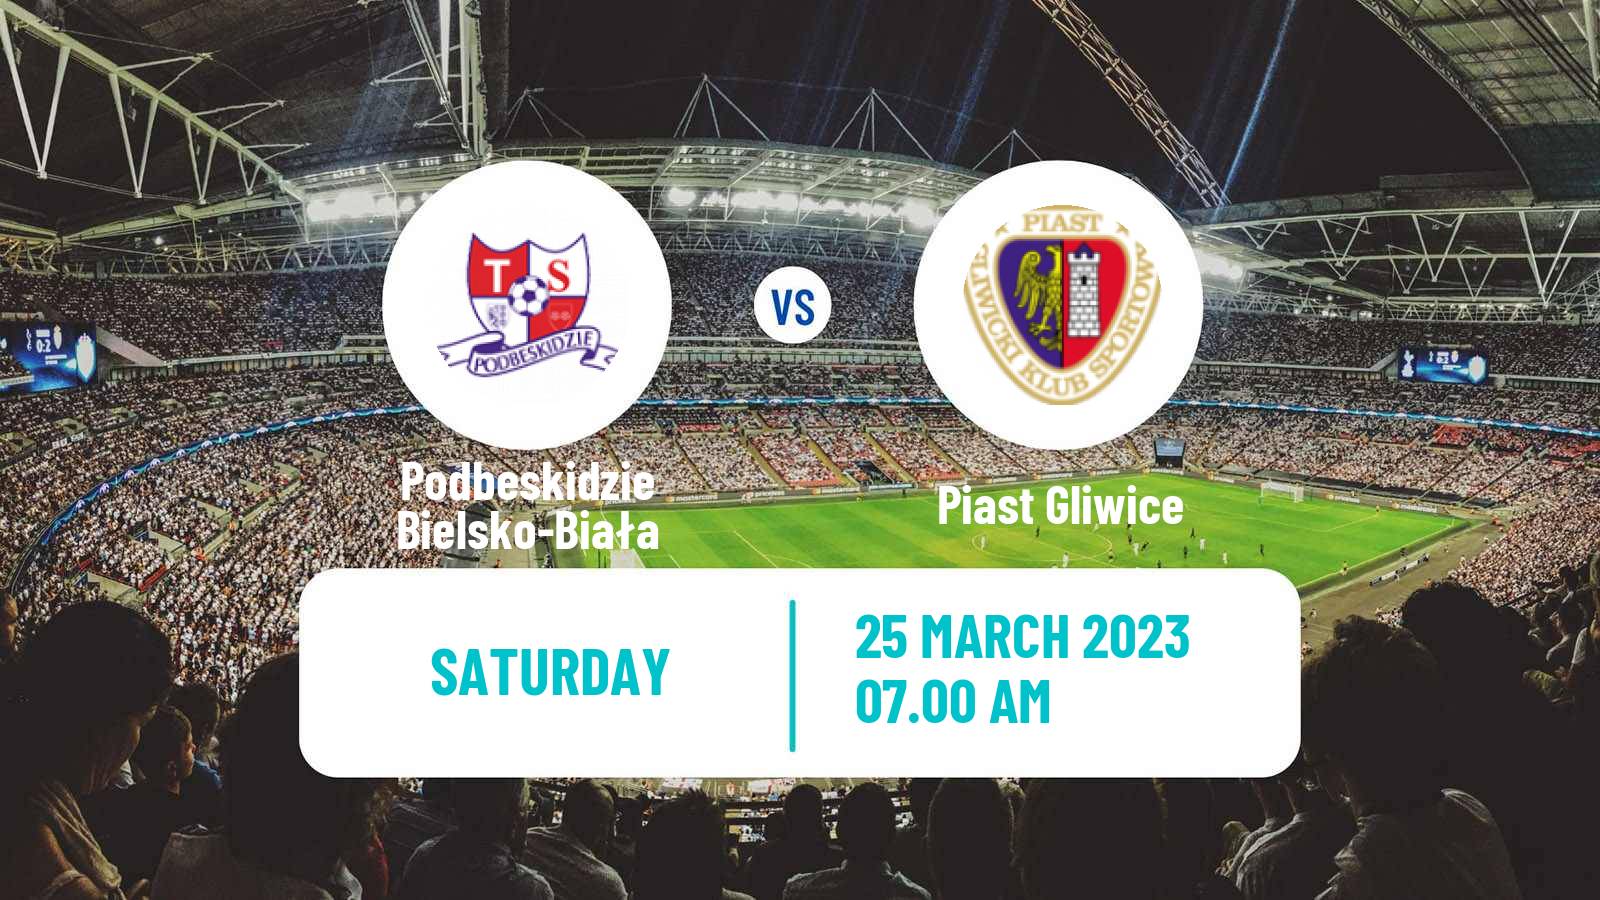 Soccer Club Friendly Podbeskidzie Bielsko-Biała - Piast Gliwice